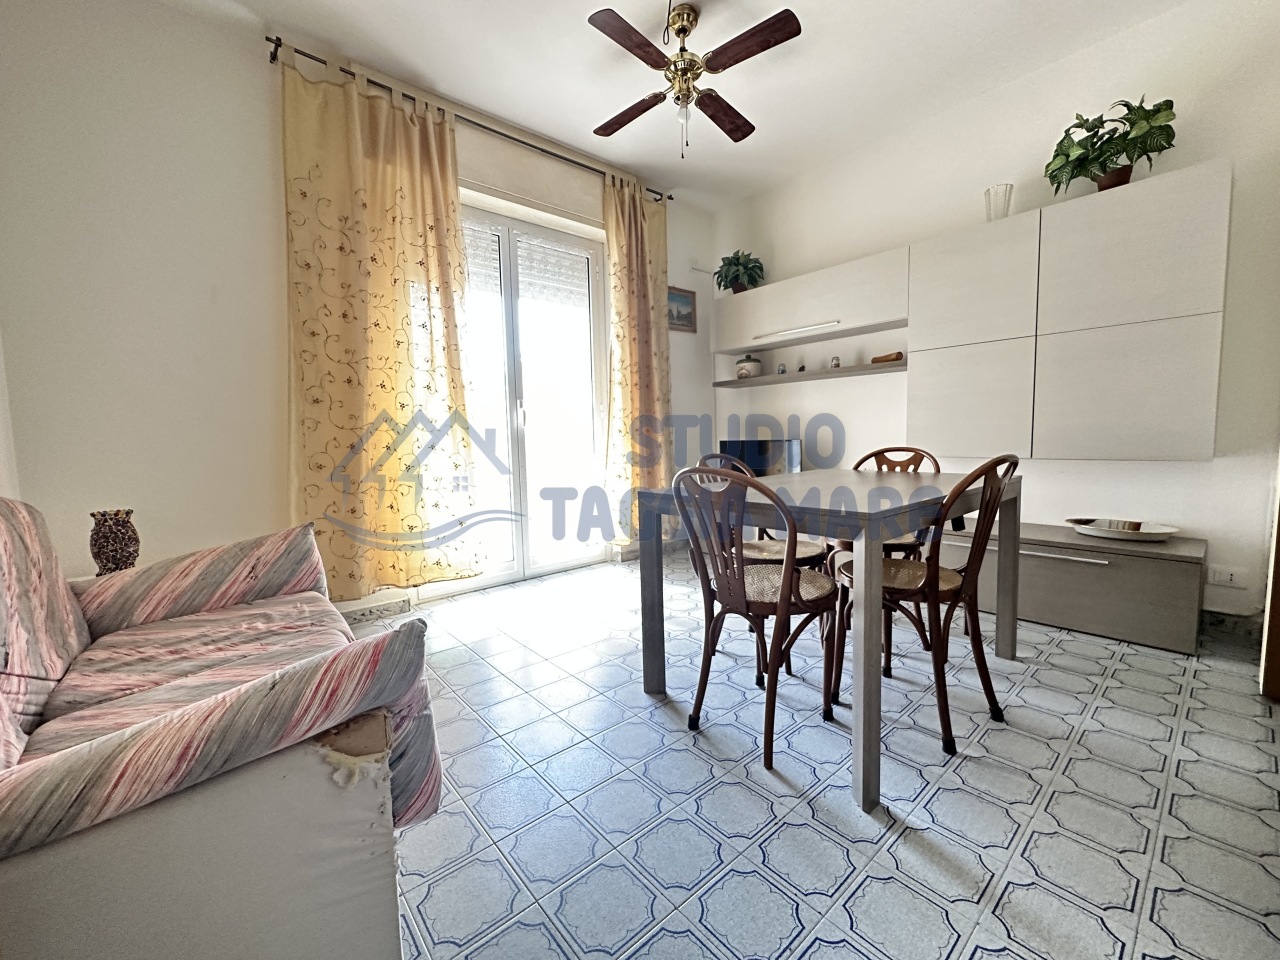 Appartamento in vendita a Taggia, 2 locali, prezzo € 160.000 | PortaleAgenzieImmobiliari.it